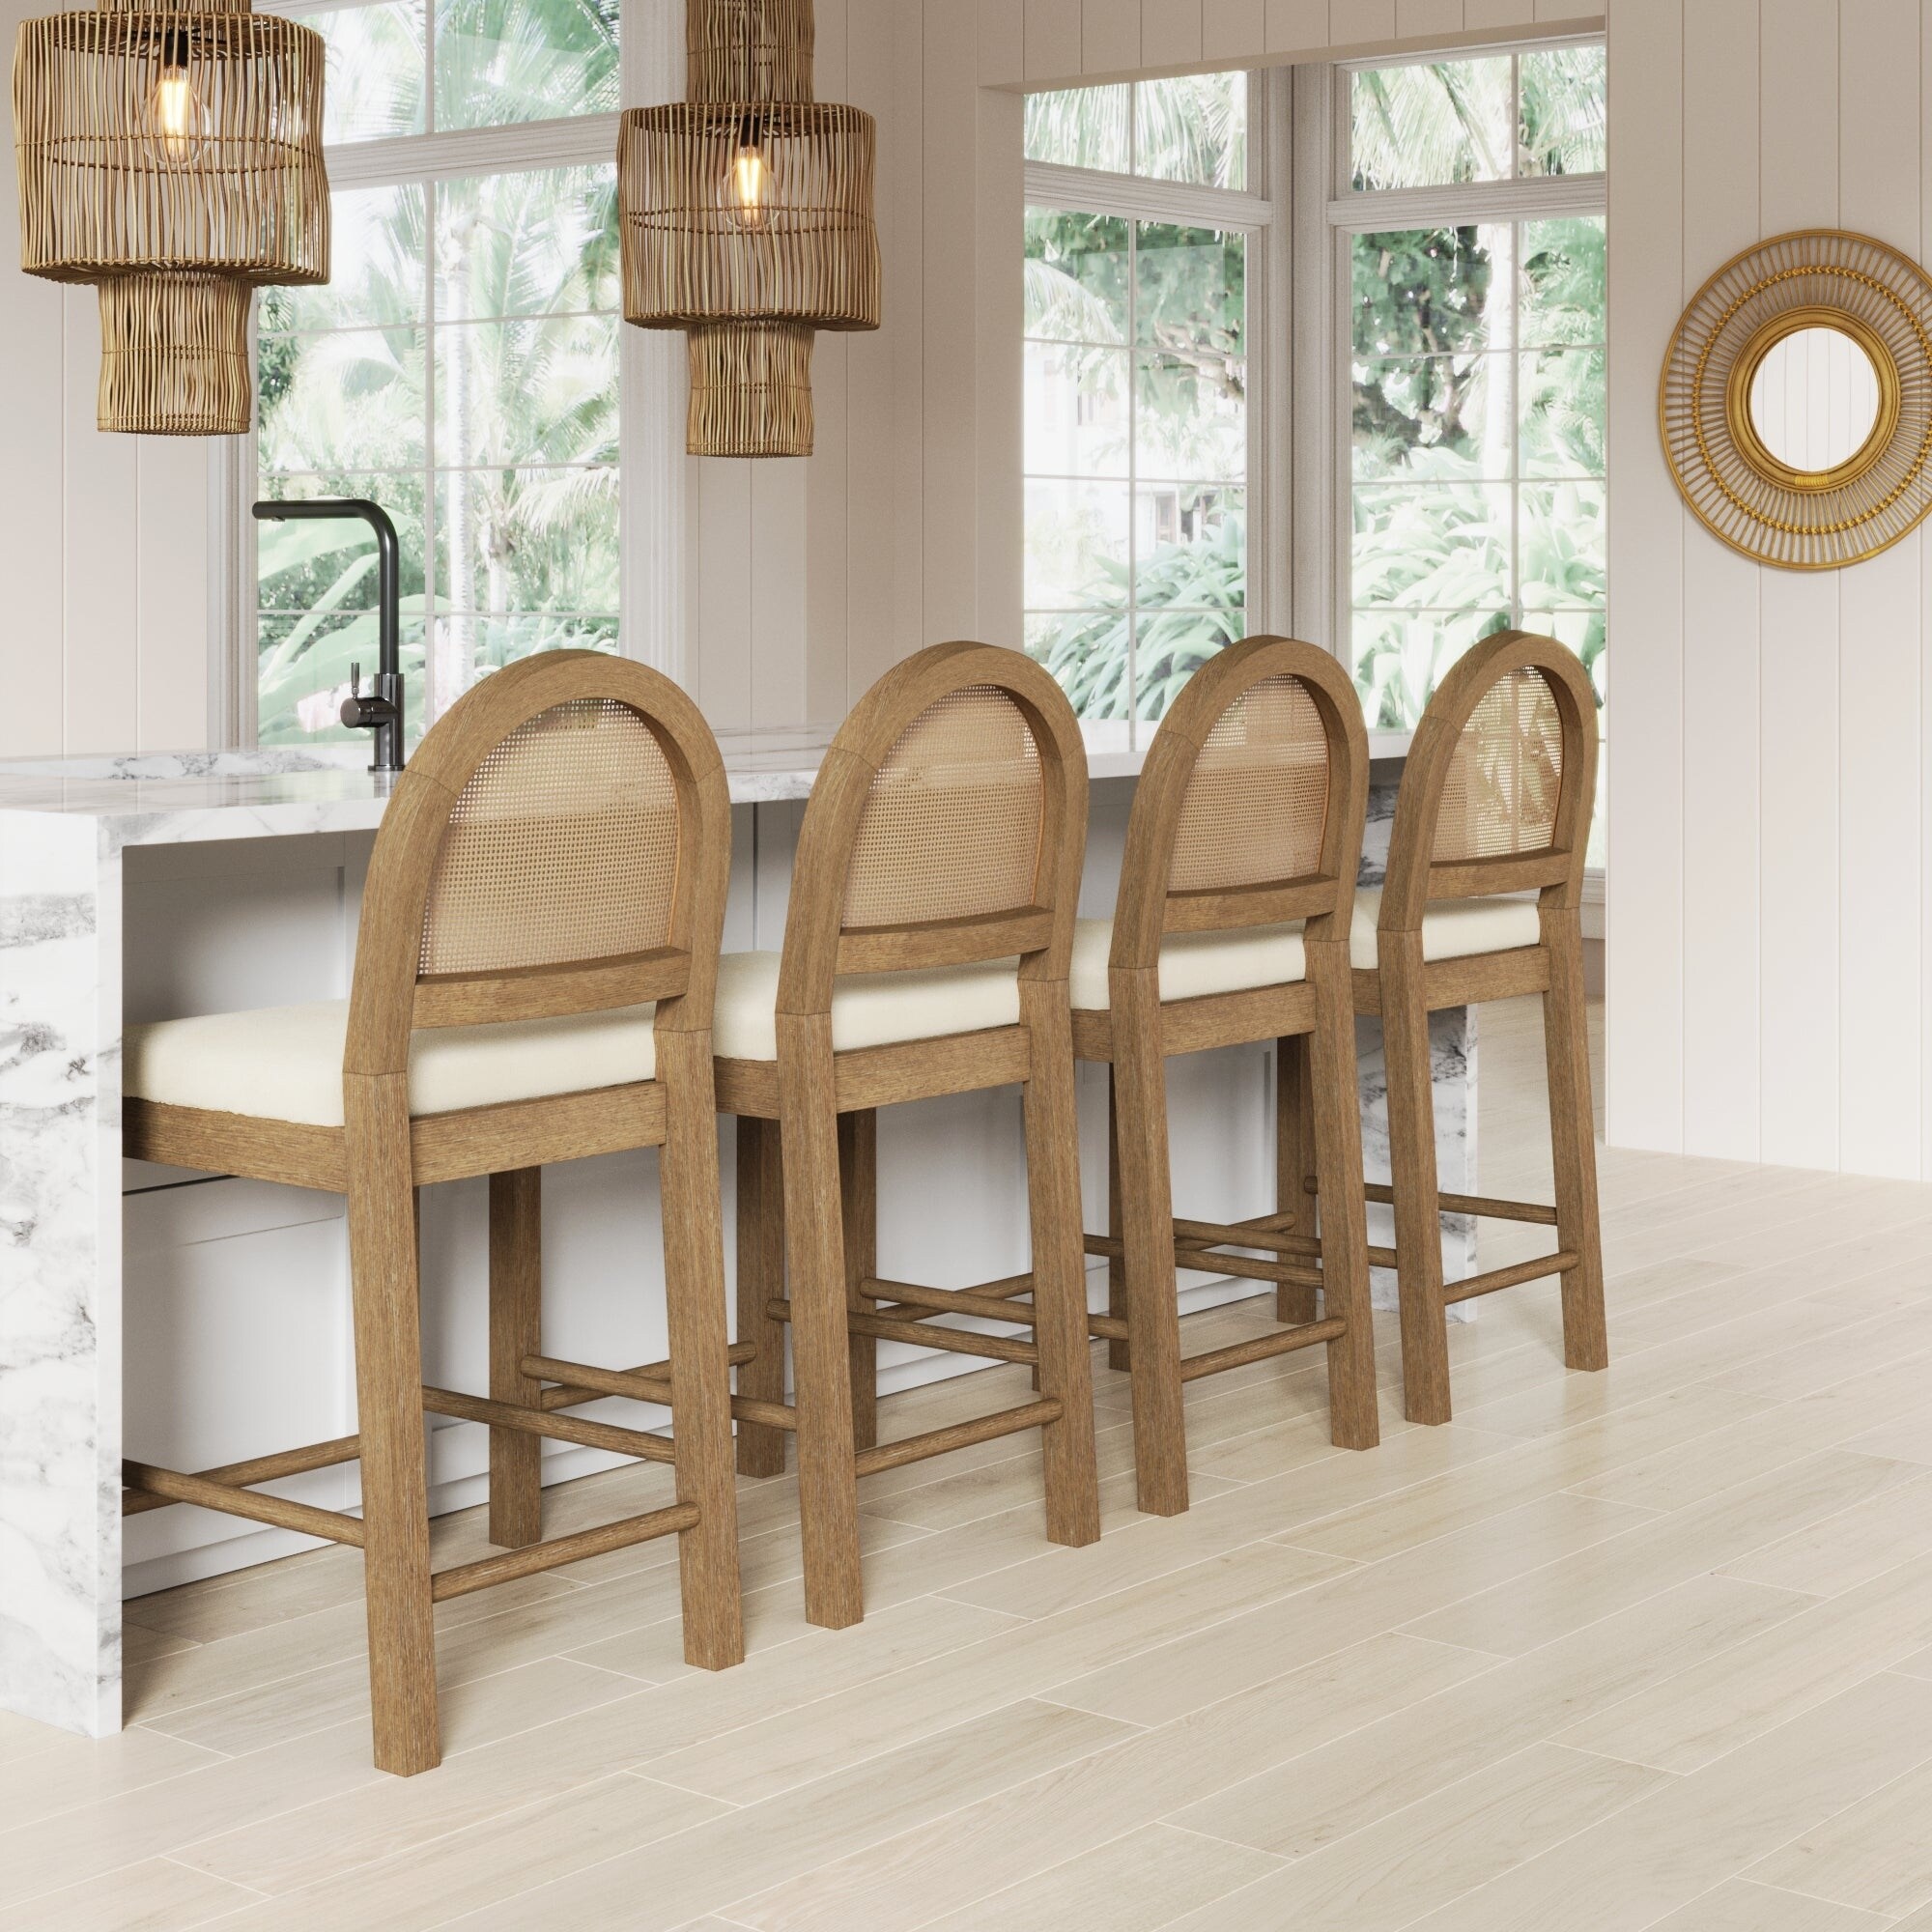 Taburetes Altos para una Cocina TOP - Nomad Bubbles  Rattan bar stools,  Kitchen bar stools, Kitchen furniture design